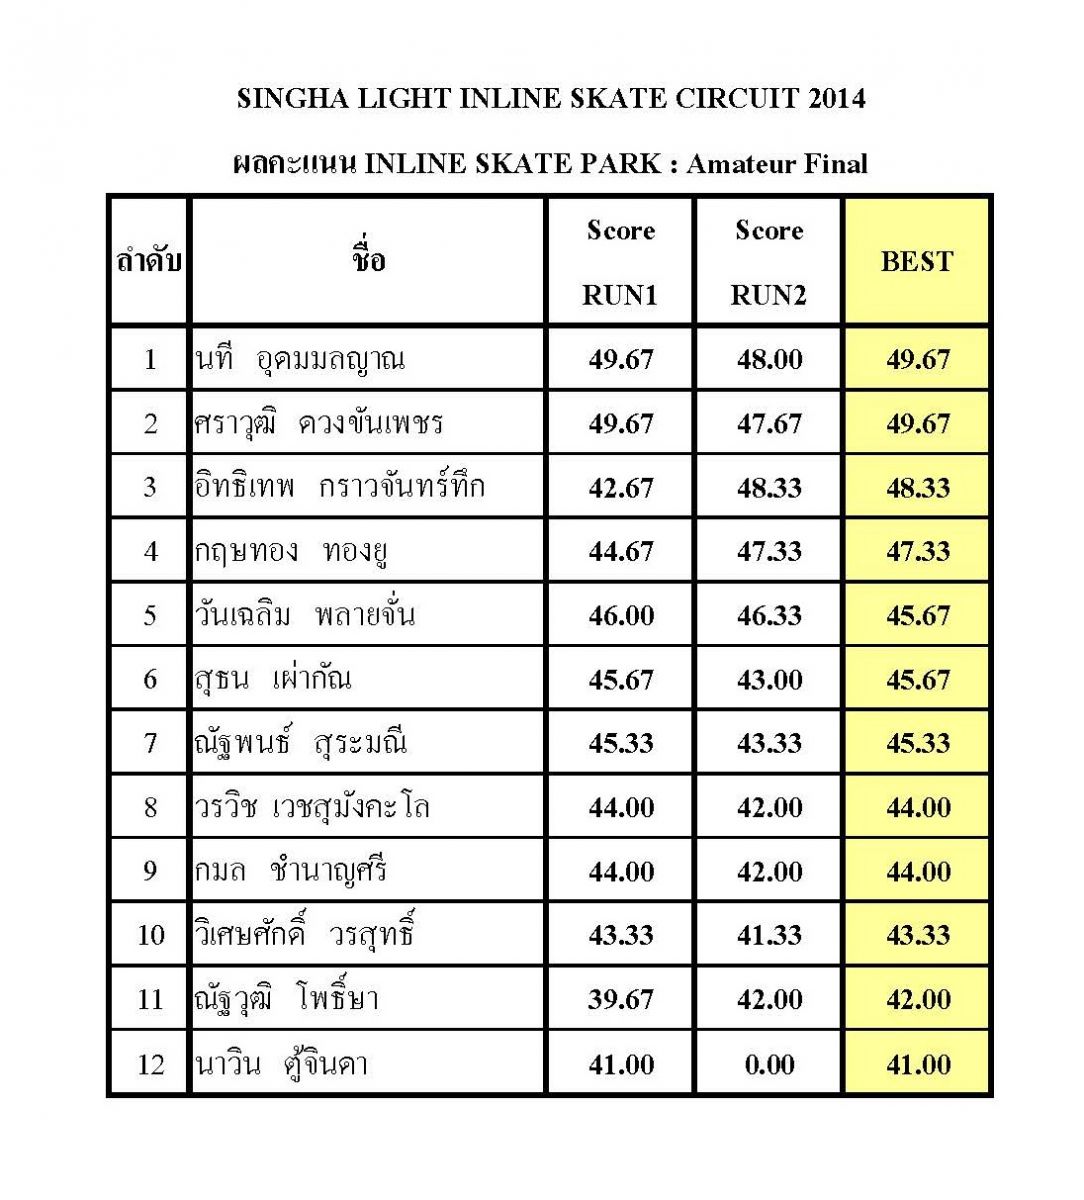 ผลการแข่งขัน Singha Light Inline Skate Circuit 2014 